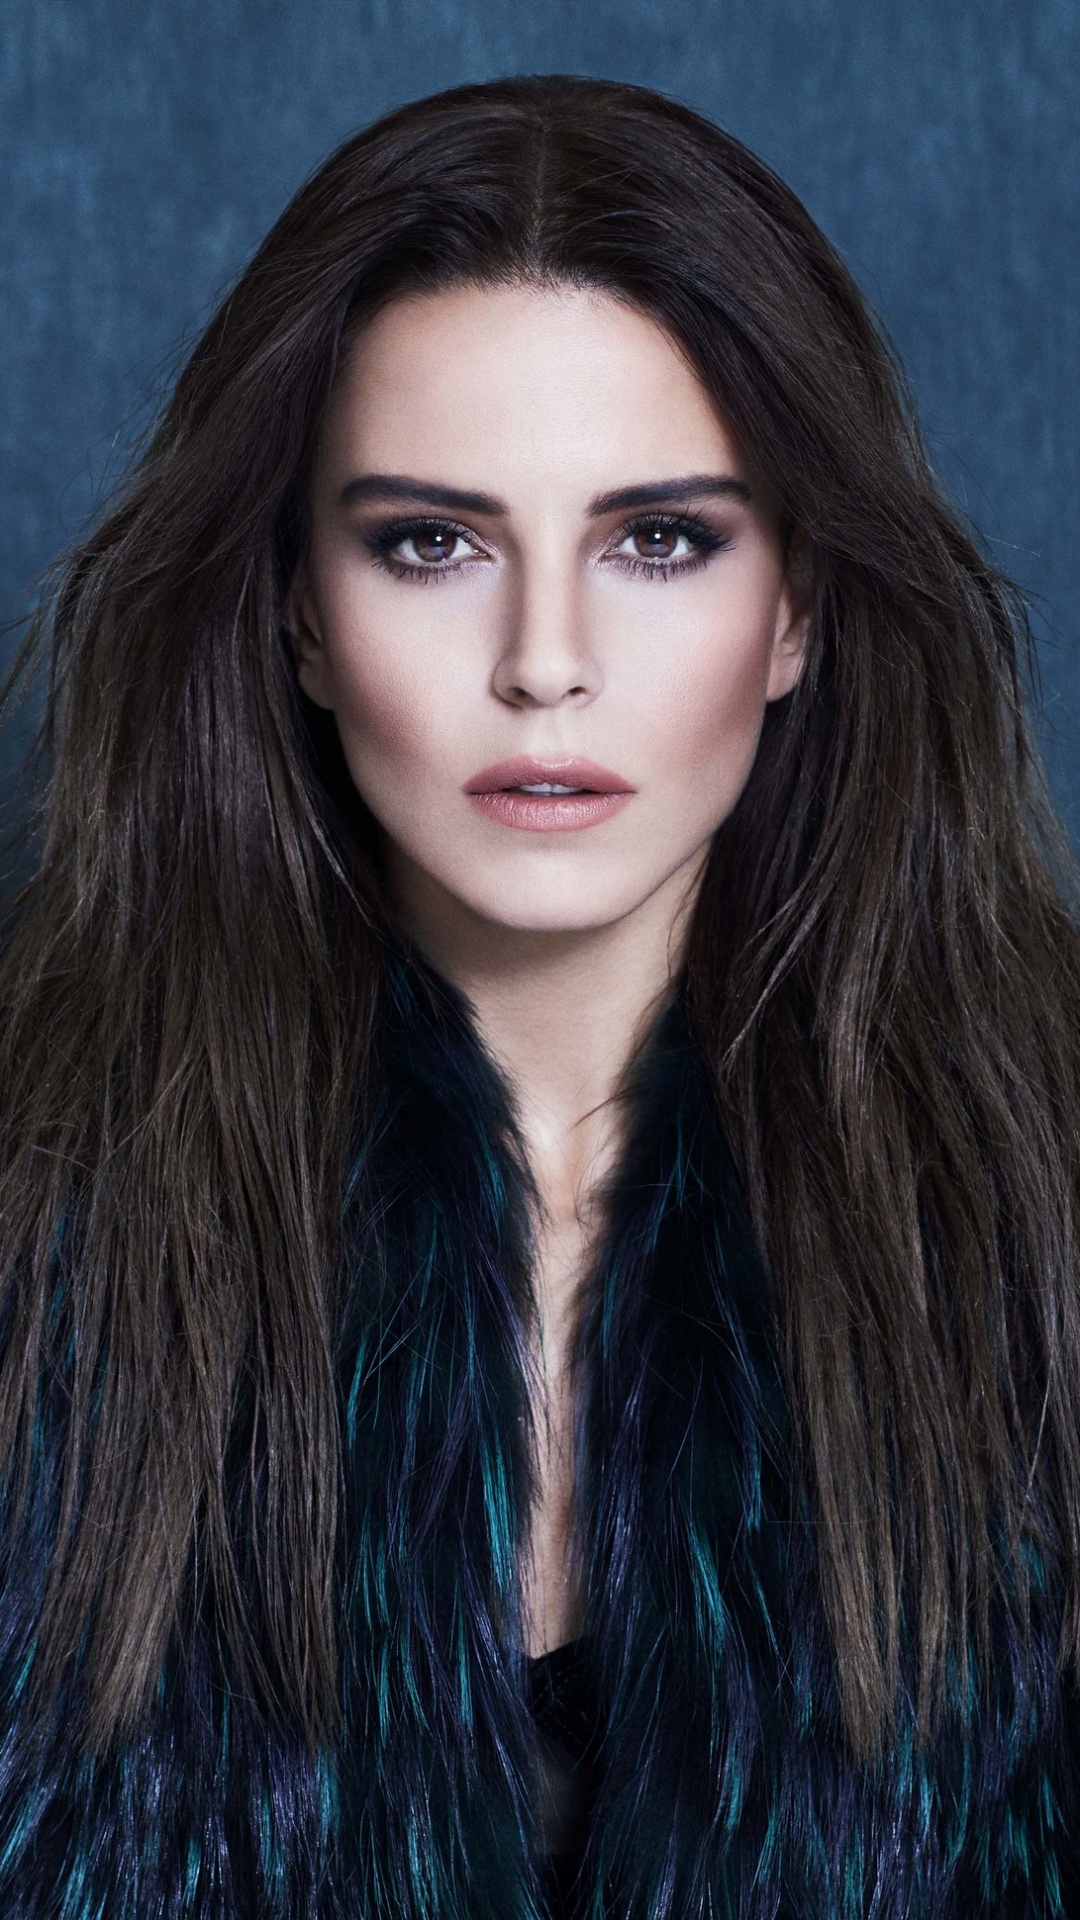 Haar, Gesicht, Schönheit, Lange Haare, Blau. Wallpaper in 1080x1920 Resolution